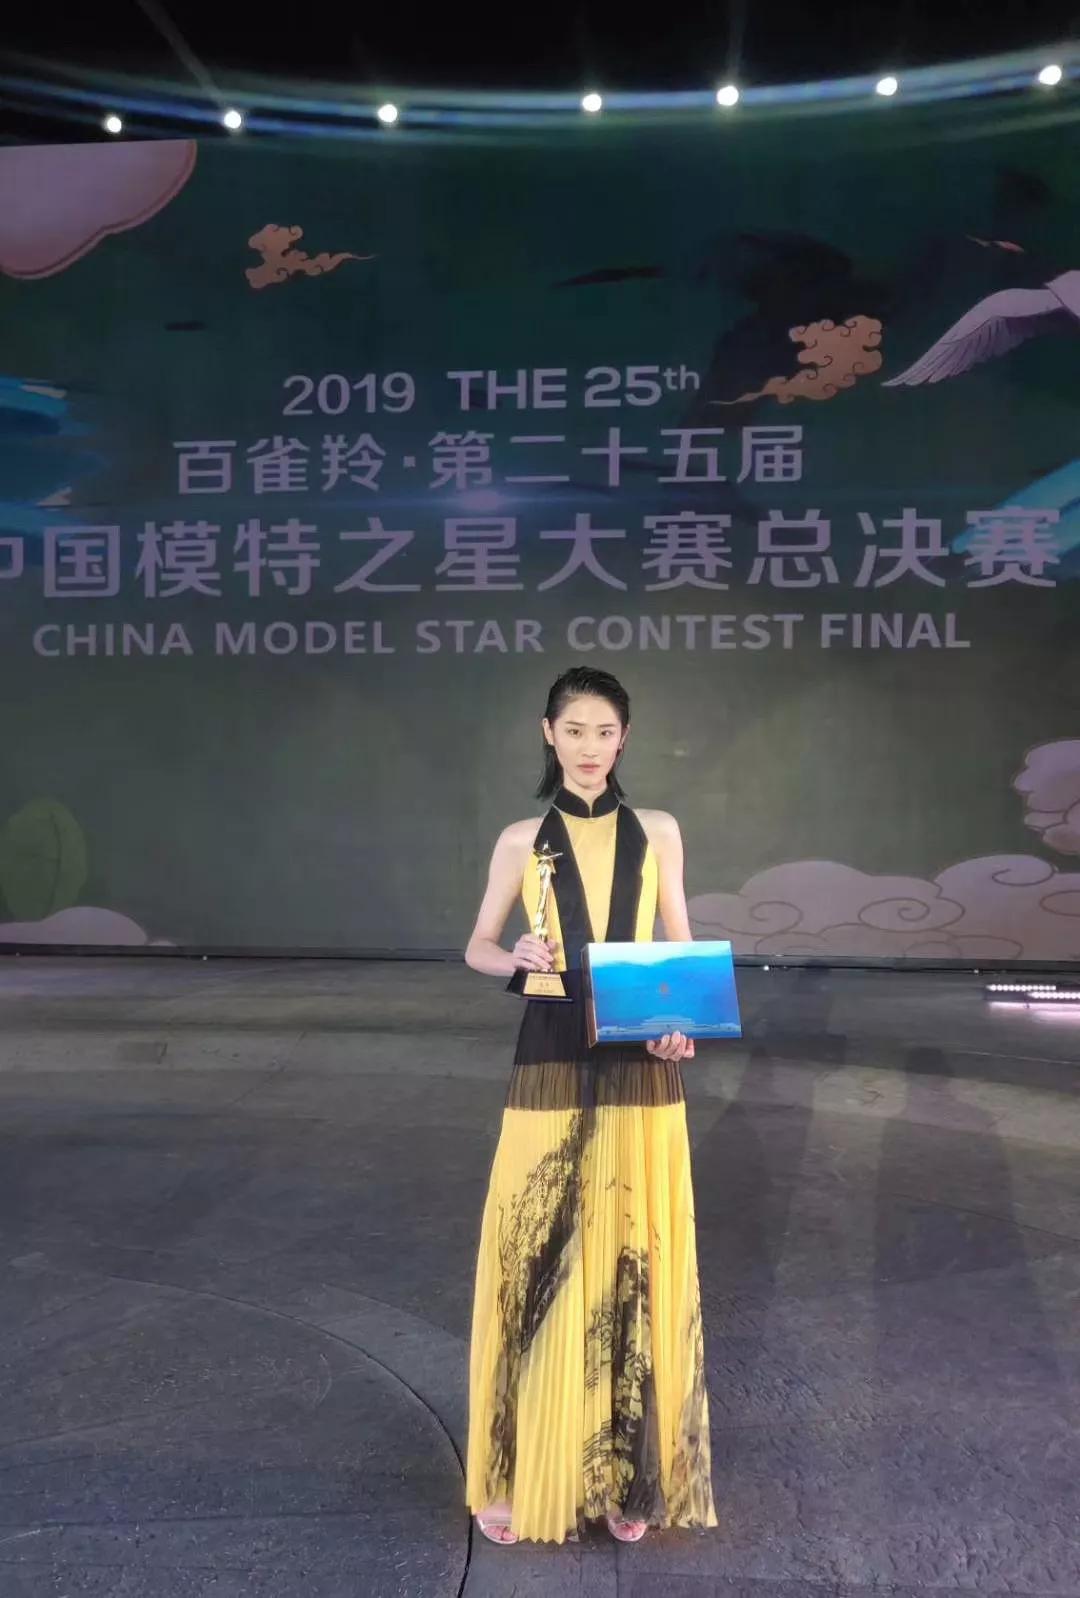 微力量学员斩获2019中国模特之星大赛全国冠军